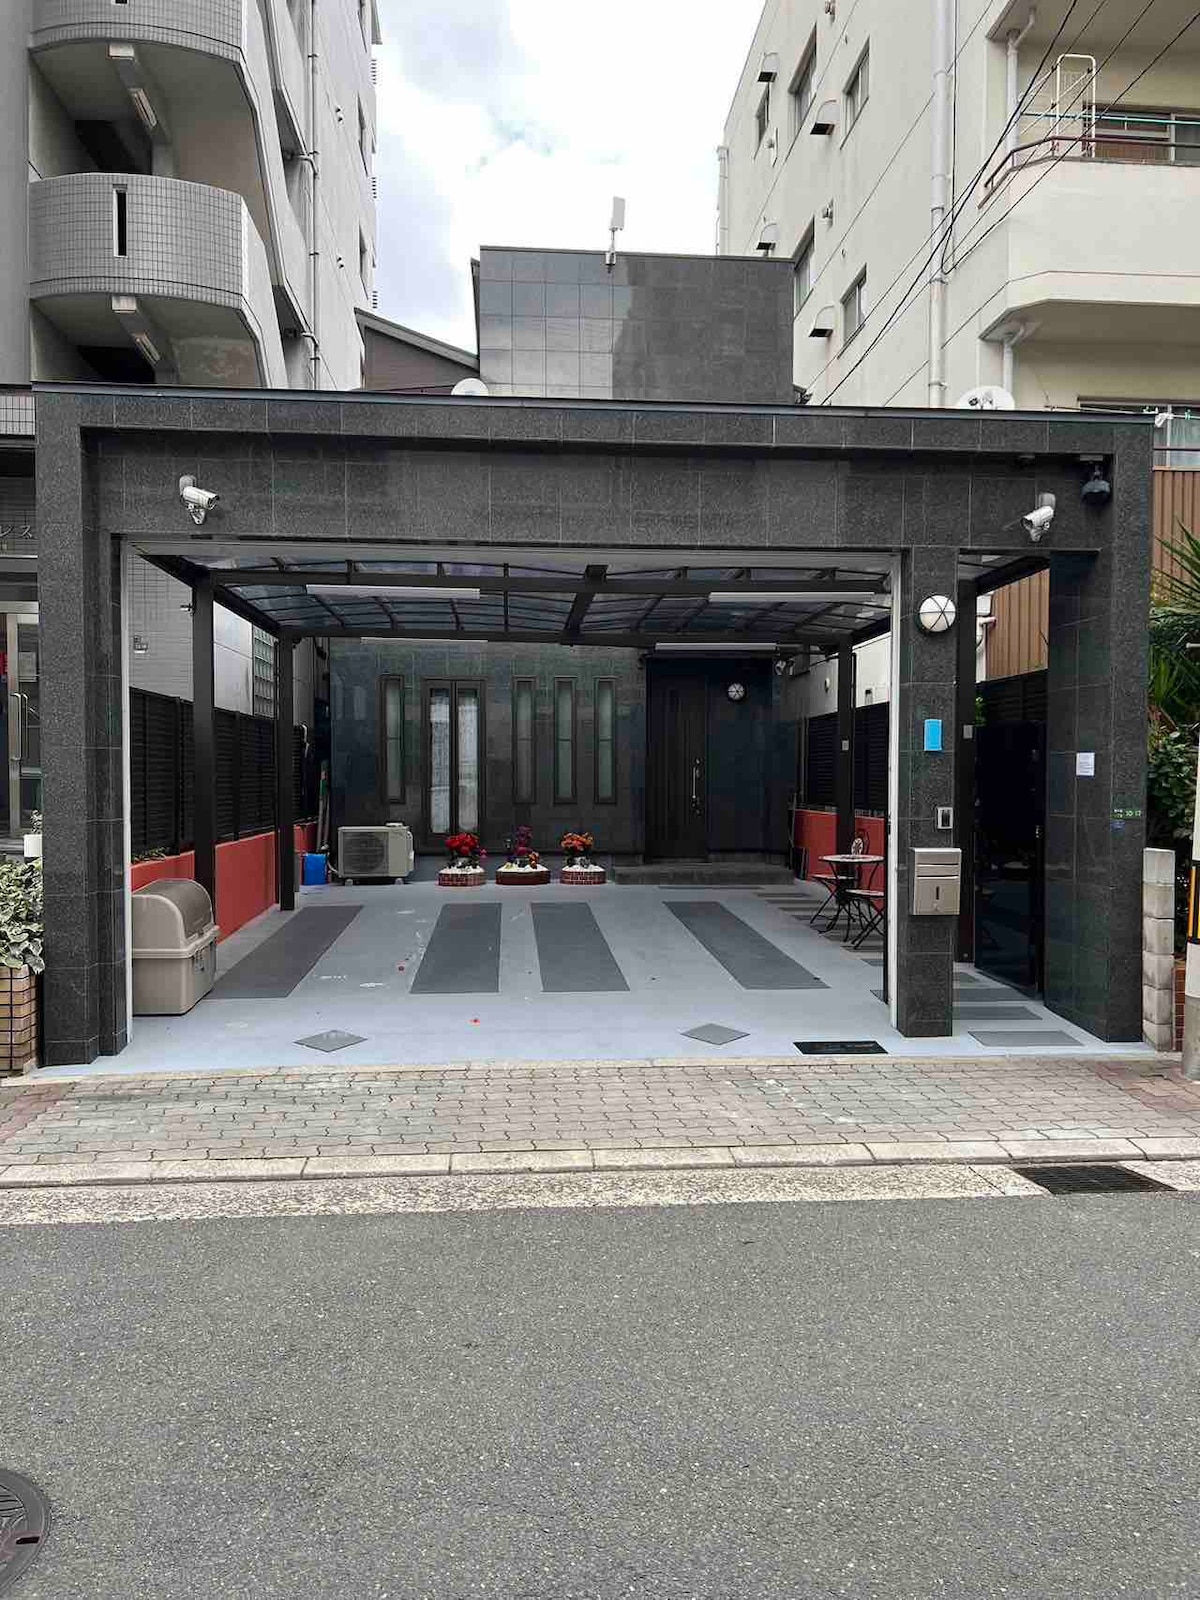 （NEW）大阪市中心豪华高级别墅（三个厕所、三个浴室）步行5分钟电车直达上本町（空港巴士站）、日本橋